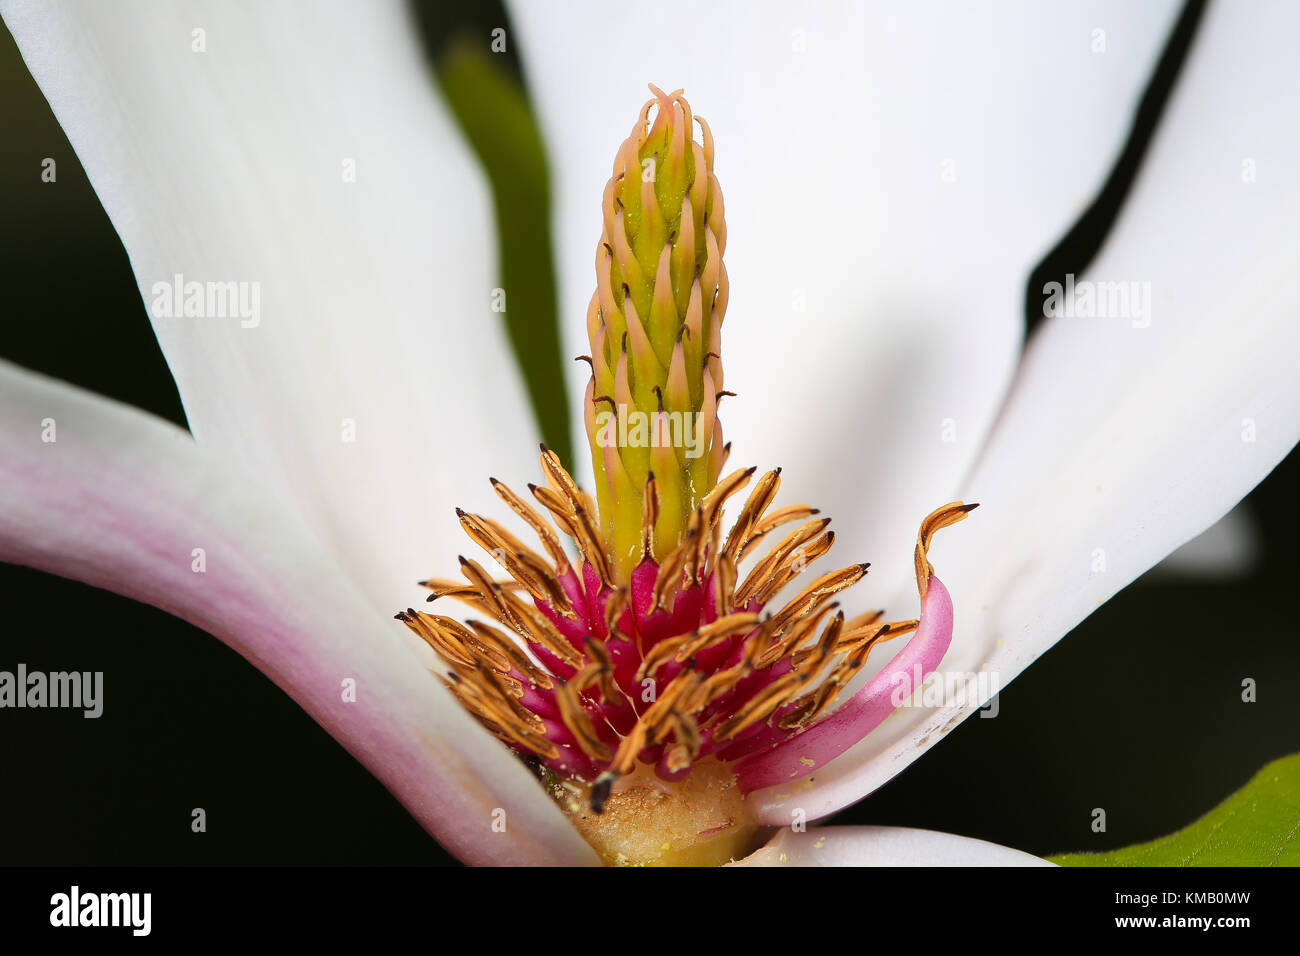 Gros plan de la fleur de magnolia (x soulangeana) avec de grands tepals blancs ouverts large révélant les parties reproductrices de la plante comme foyer central. Banque D'Images